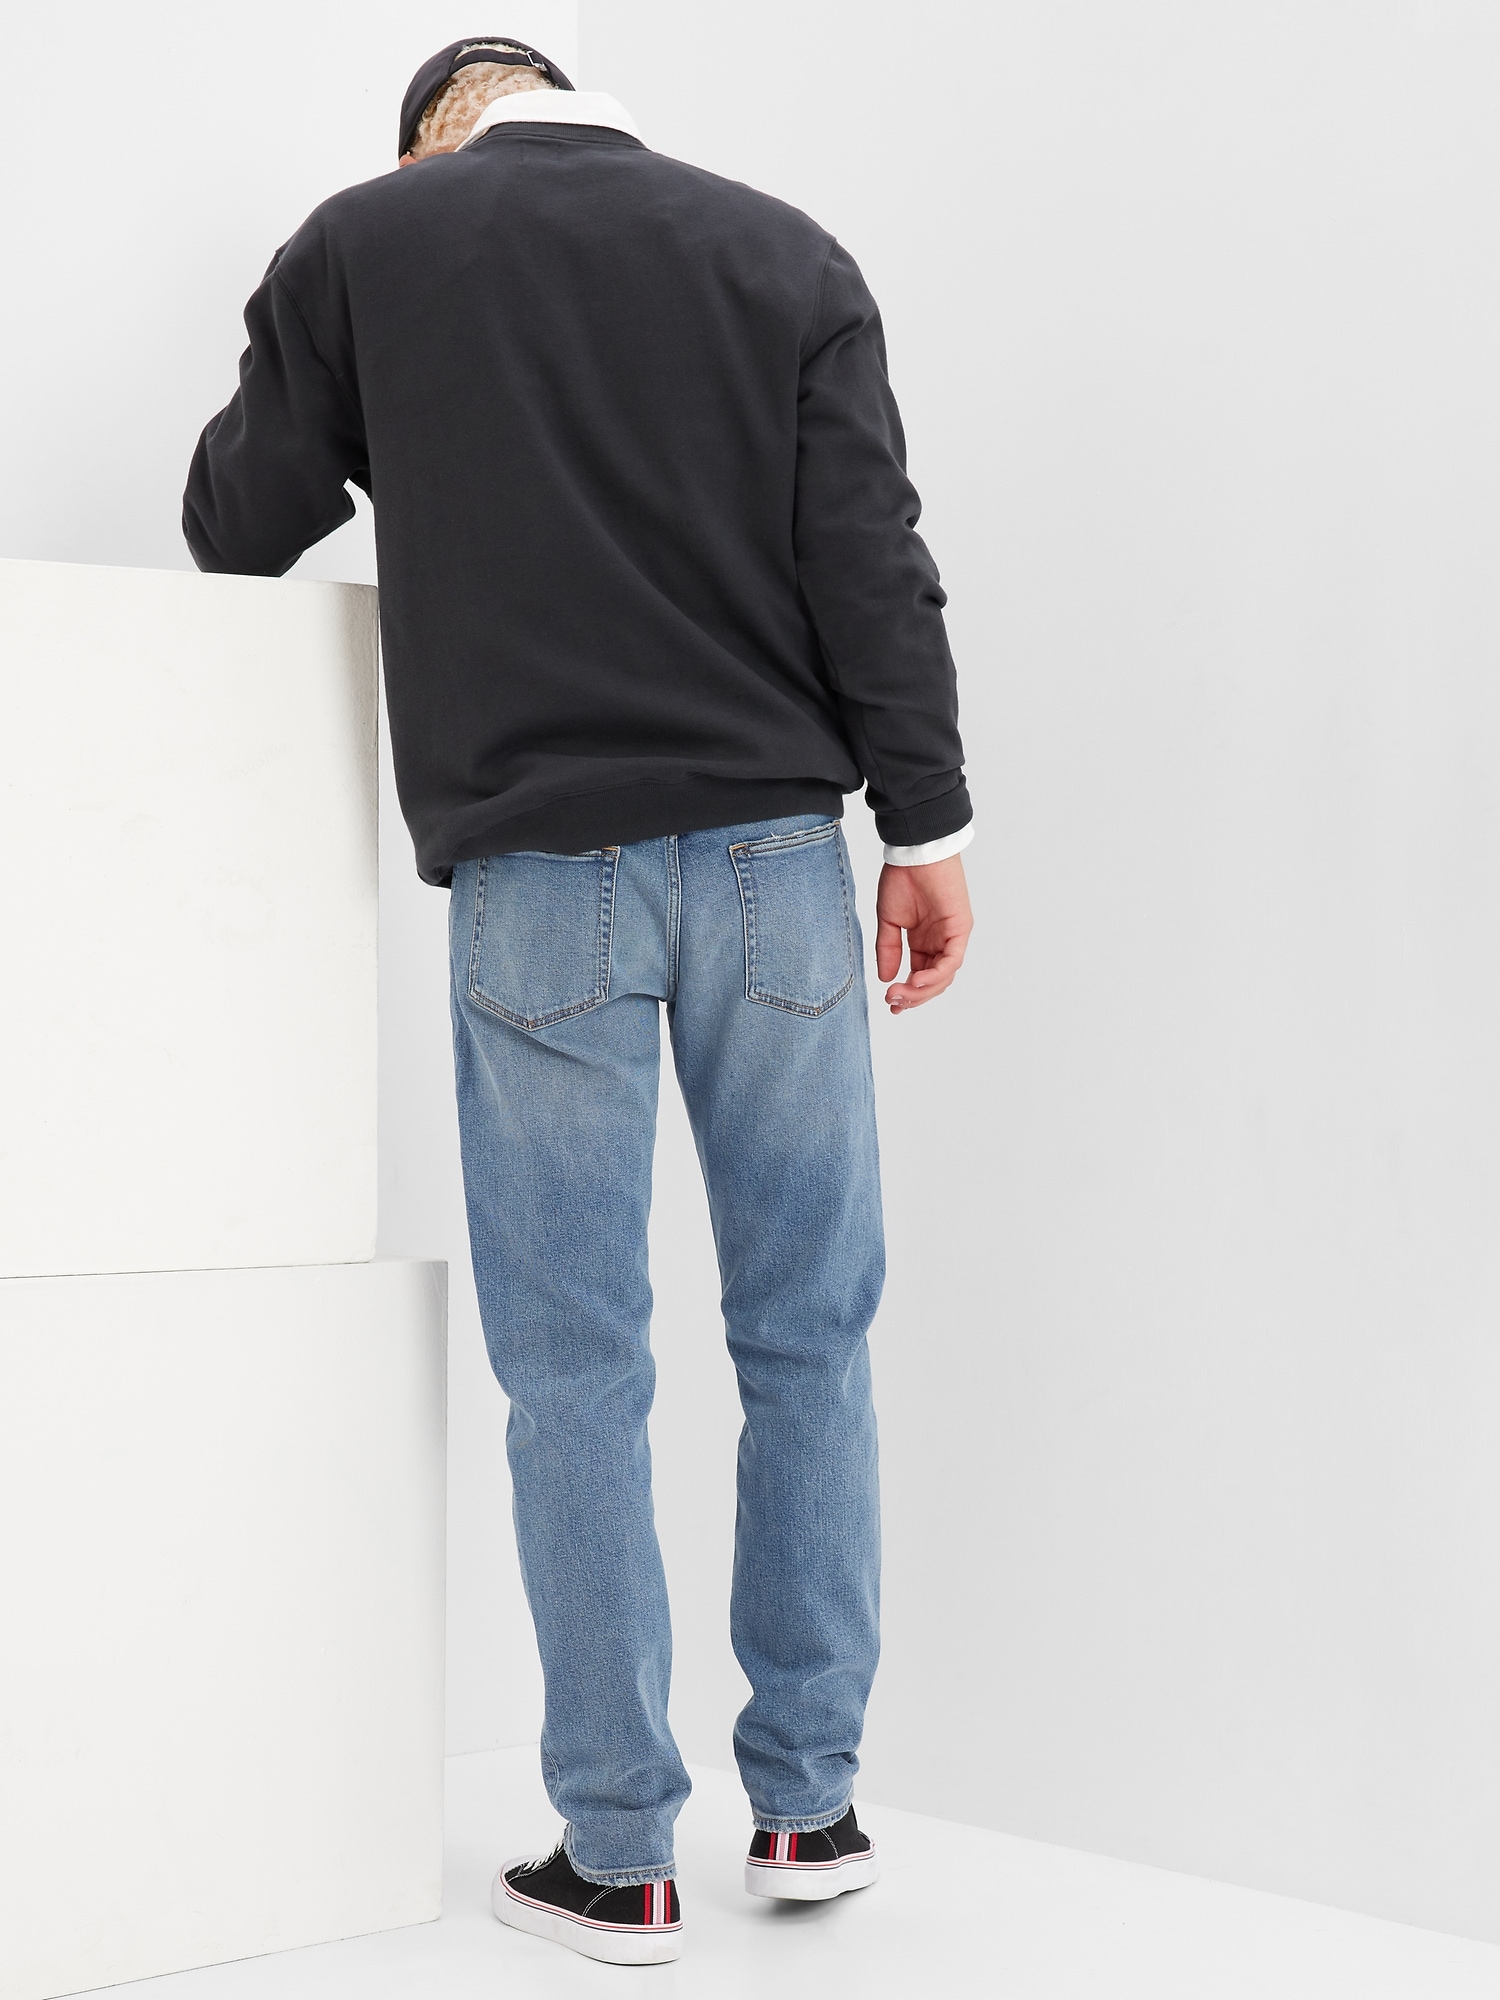 SoftFlex Gap | Jeans in Slim